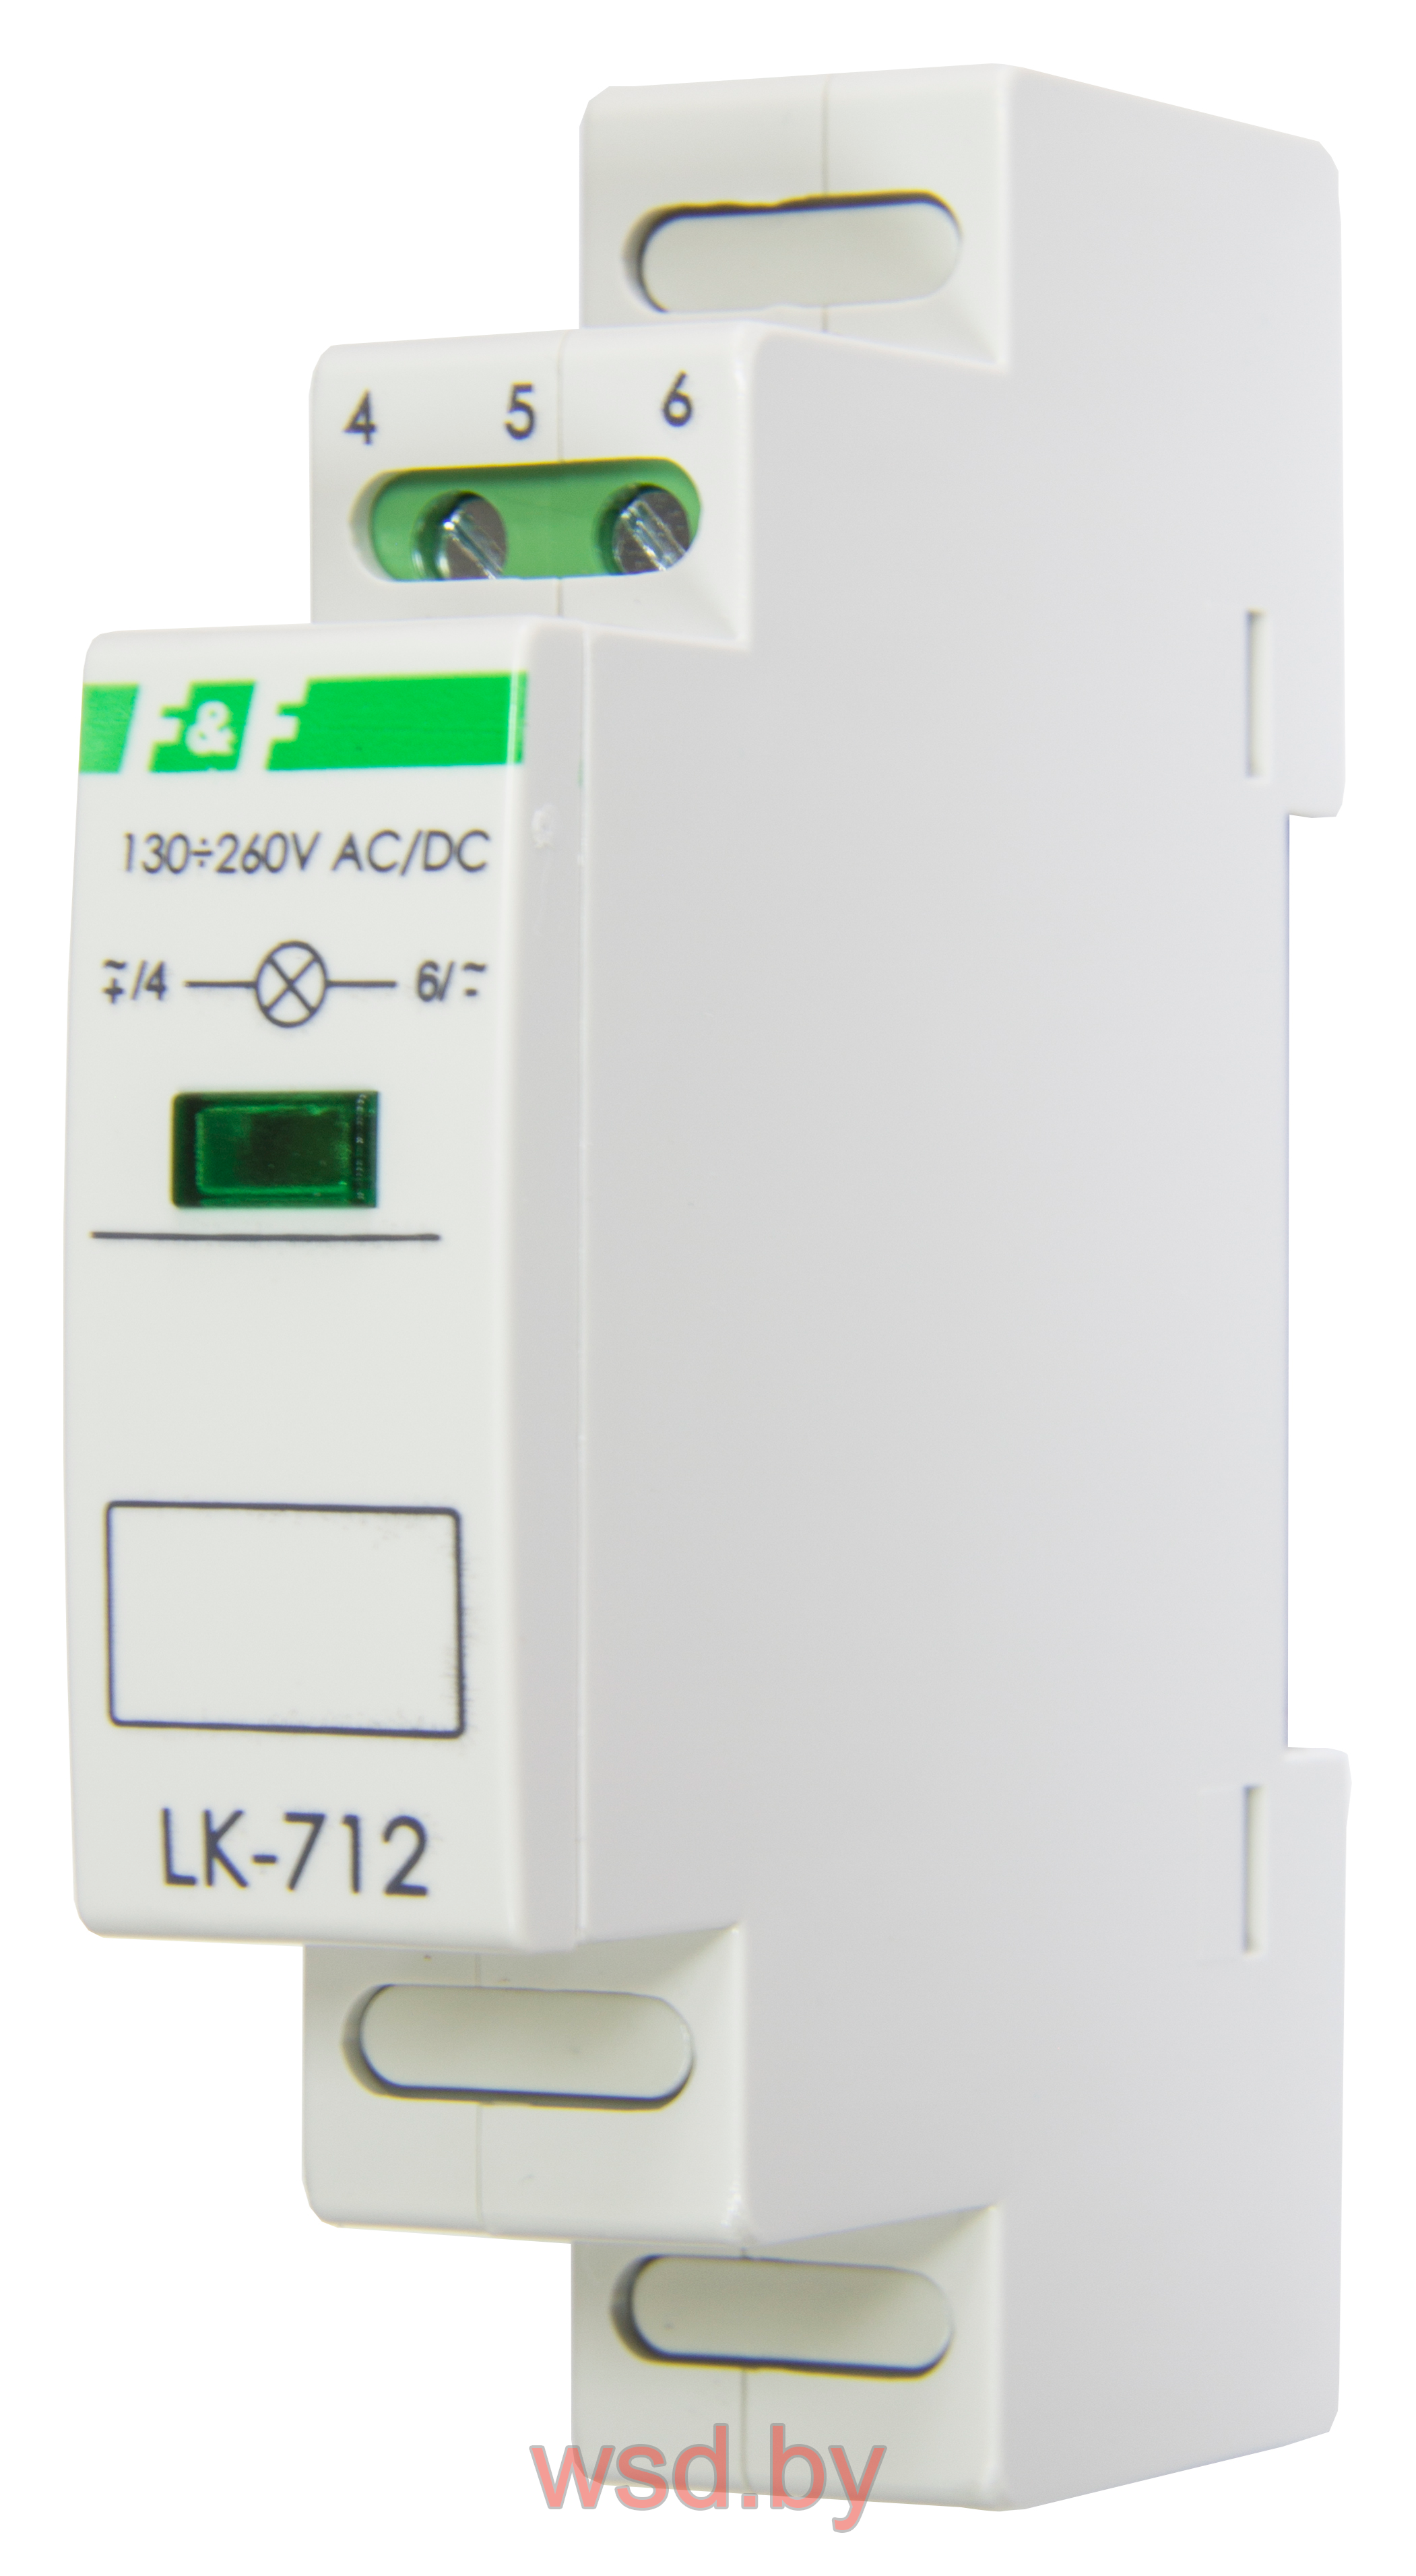 Указатель напряжения LK-712-G-3 сигнализация наличия одной фазы, цвет ЗЕЛЁНЫЙ,  1 модуль, монтаж на DIN-рейке 30-130 В AC/DC IP20